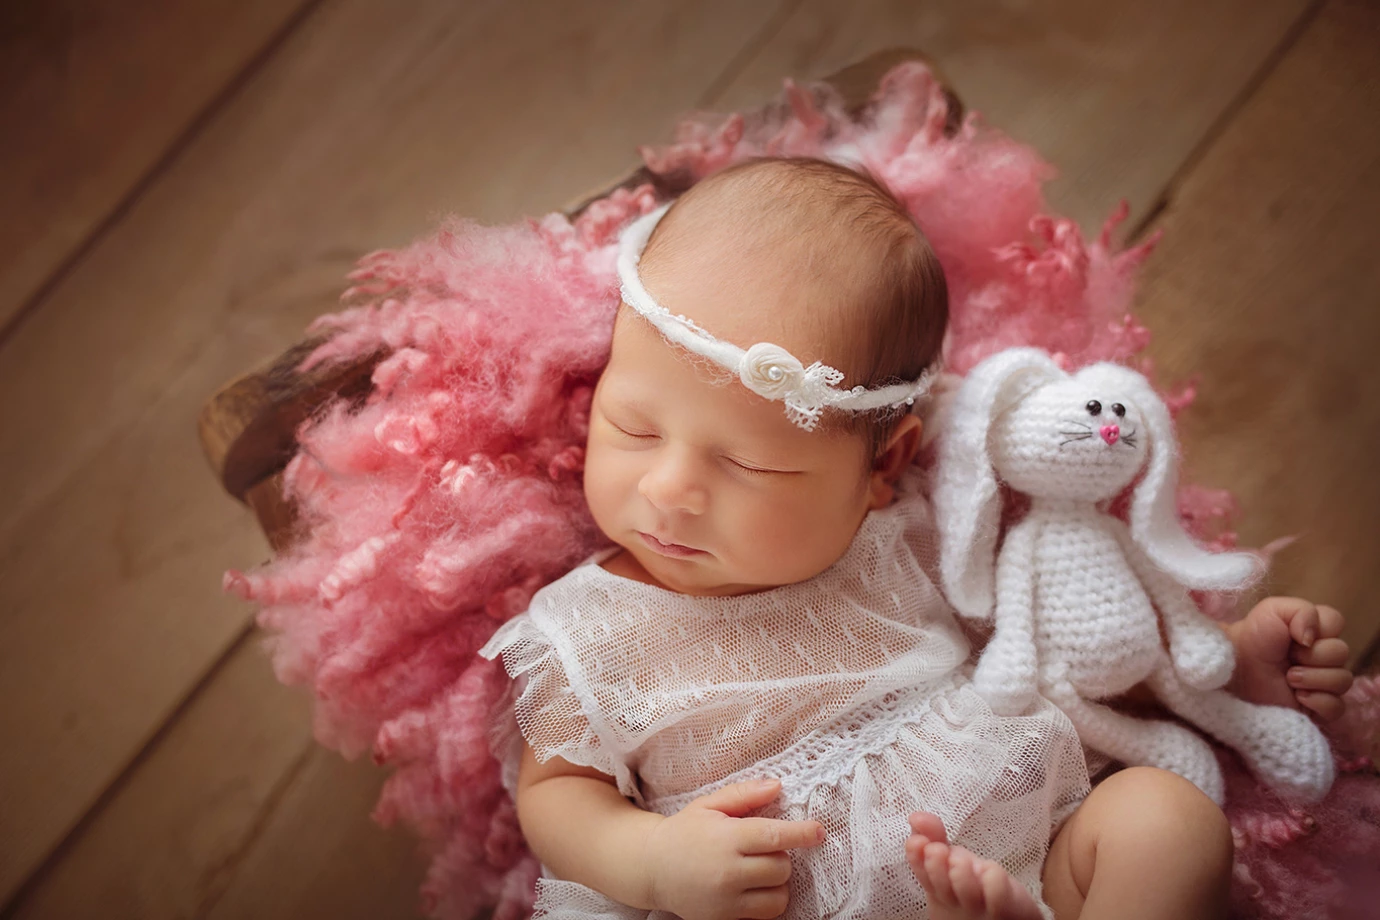 zdjęcia ruda-slaska fotograf fotokos-katarzyna-kosman portfolio zdjecia noworodkow sesje noworodkowe niemowlę